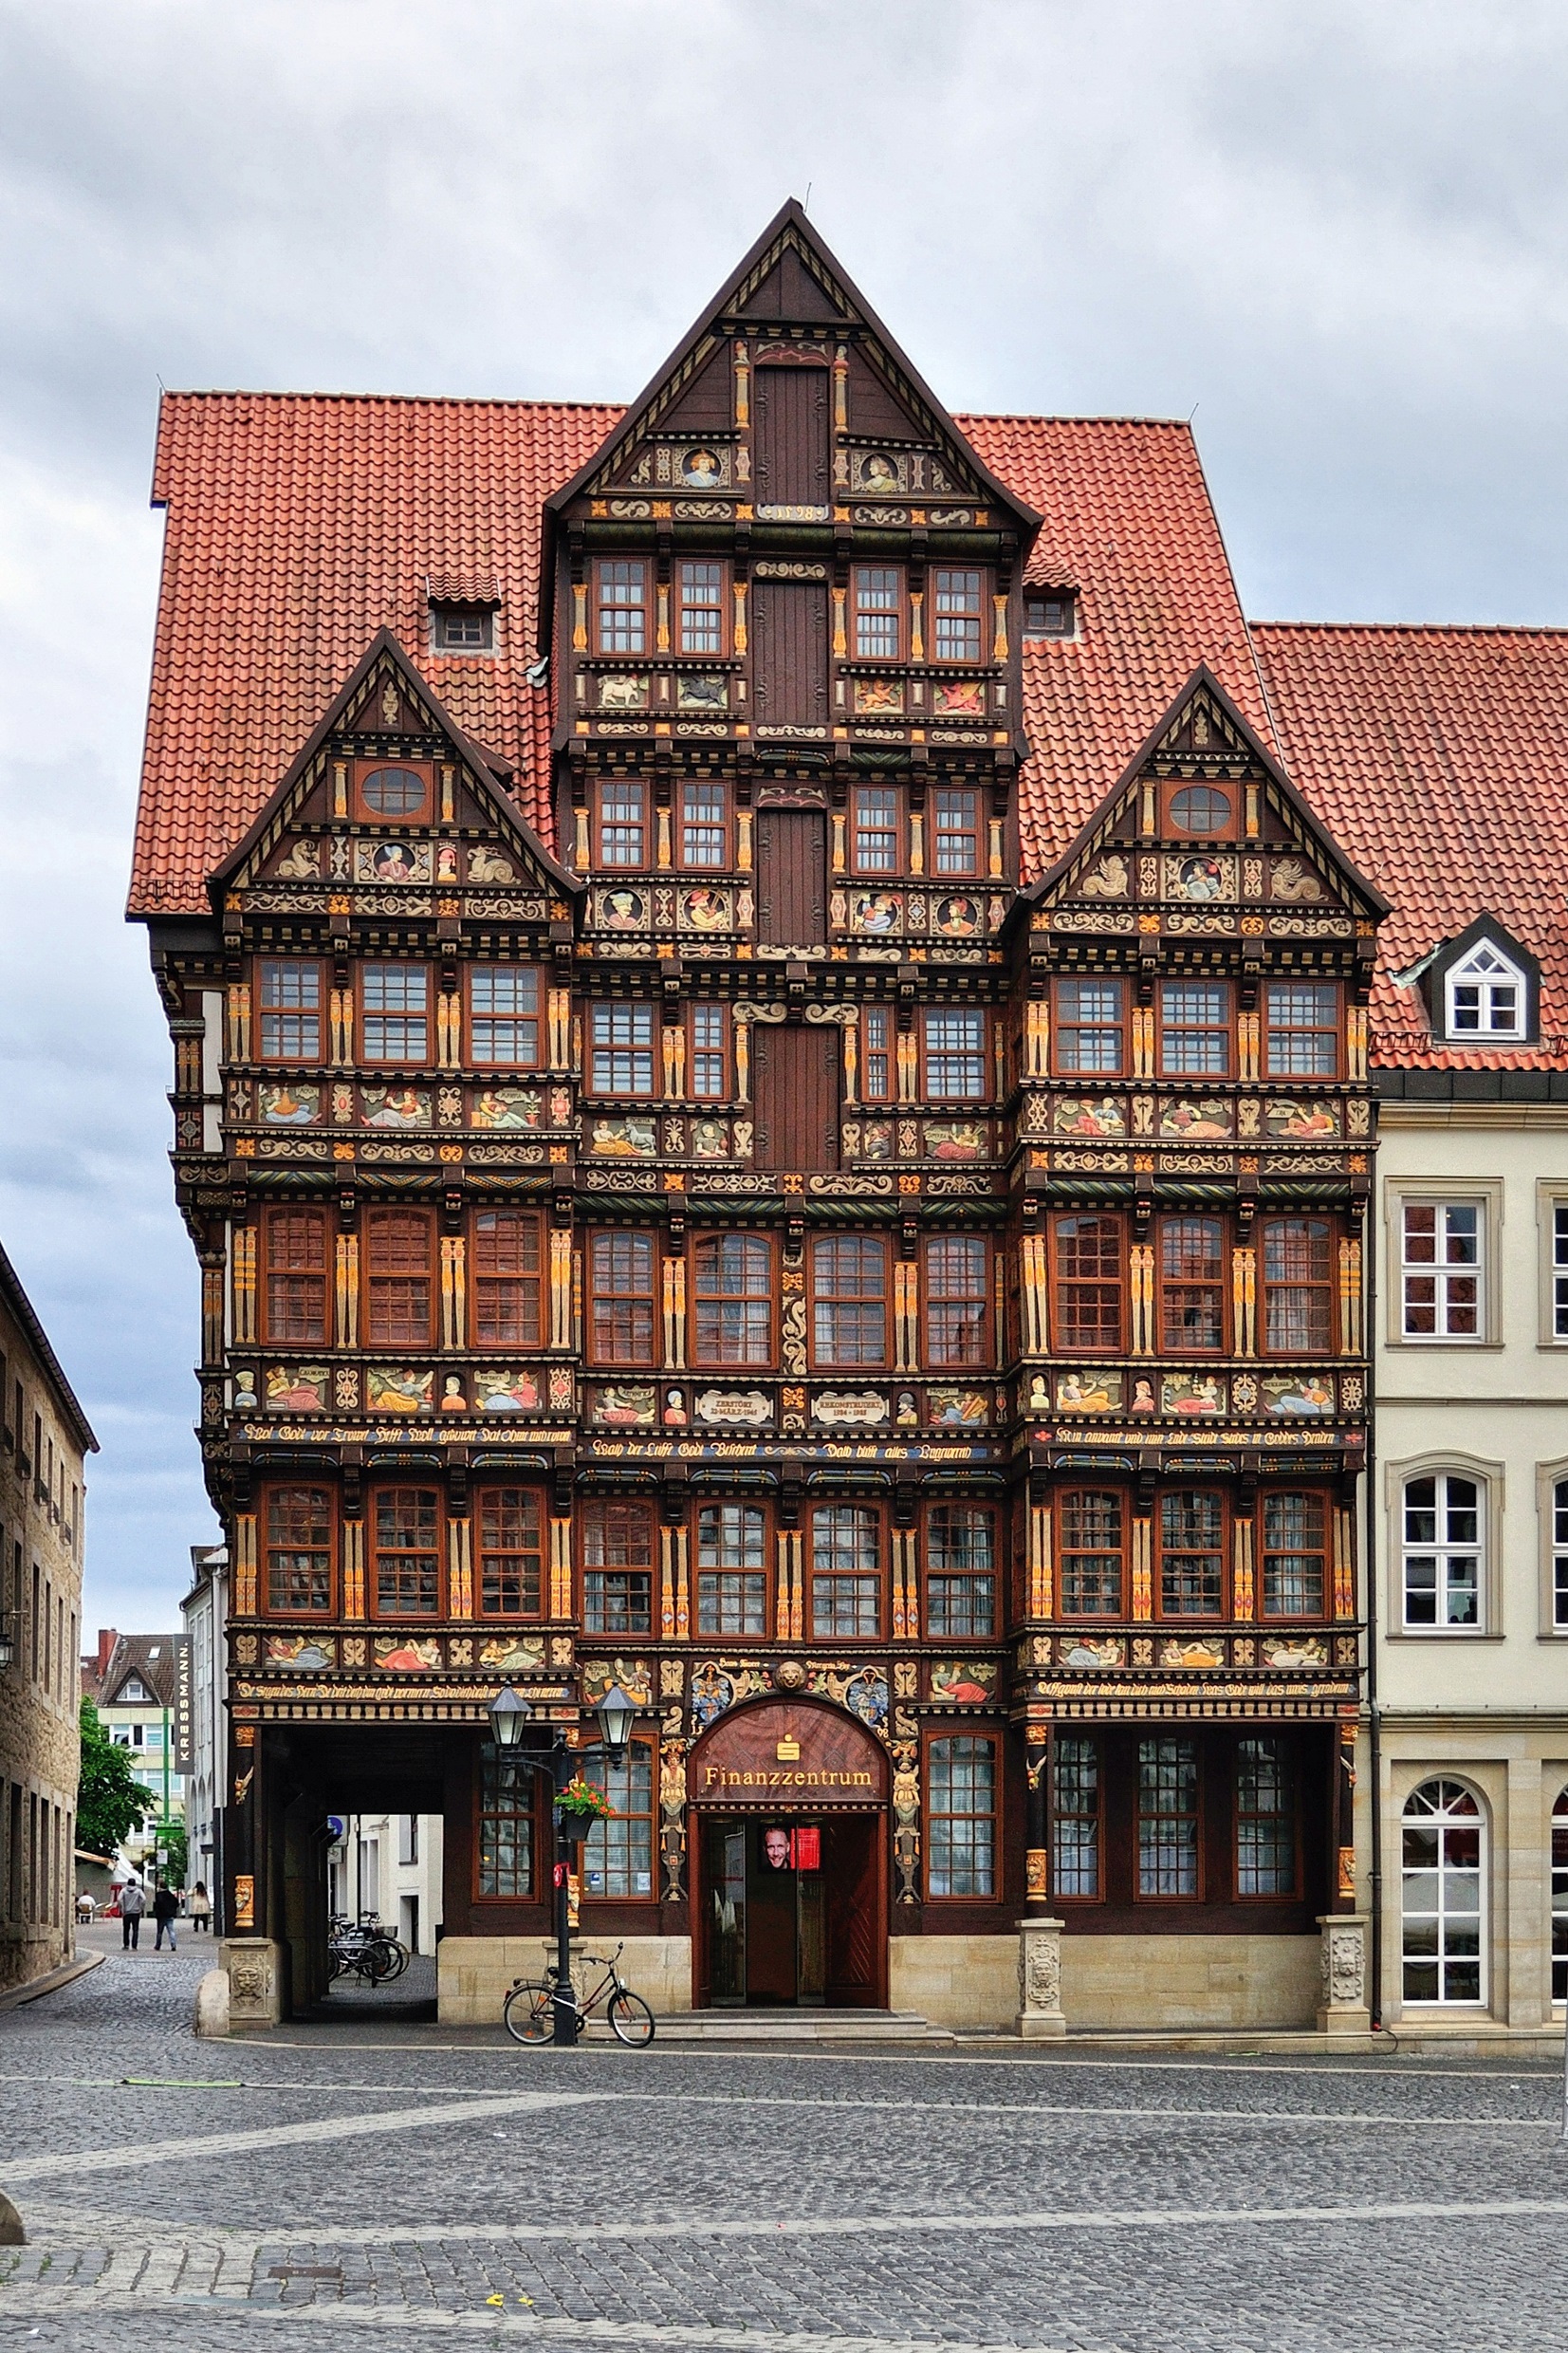 Wedekindhaus Hildesheim.
